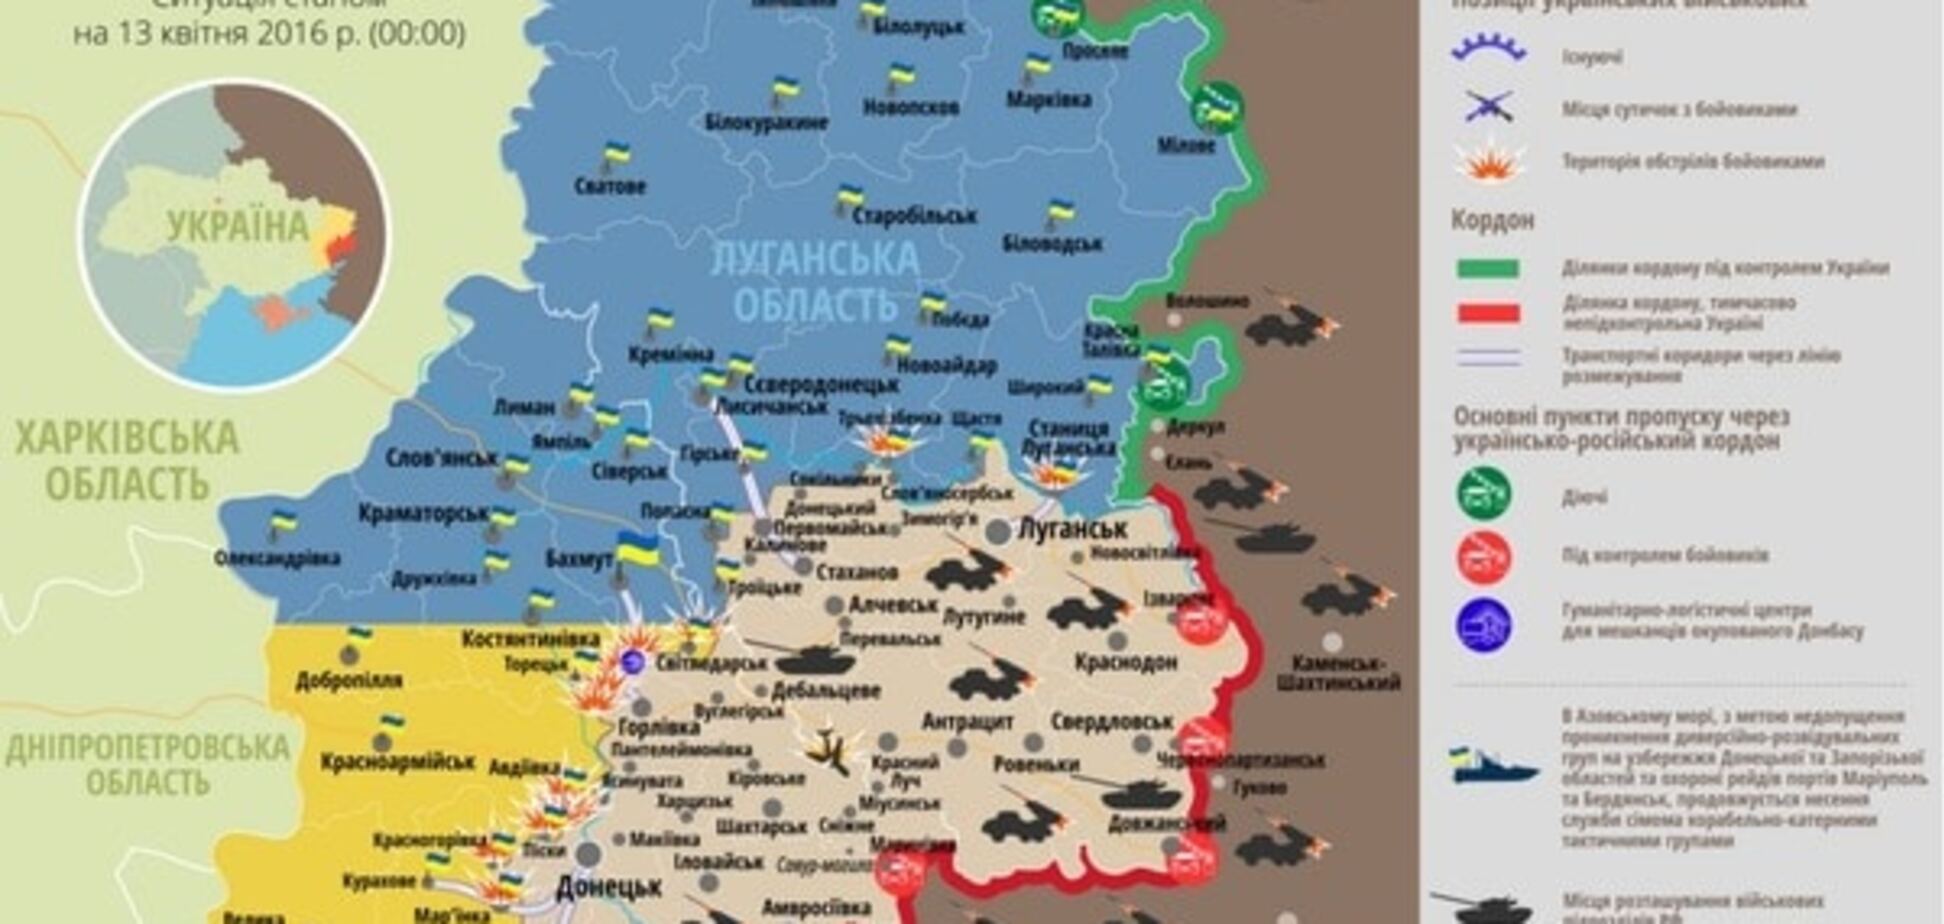 Авто з українськими військовими підірвалося на Донбасі: опублікована карта АТО